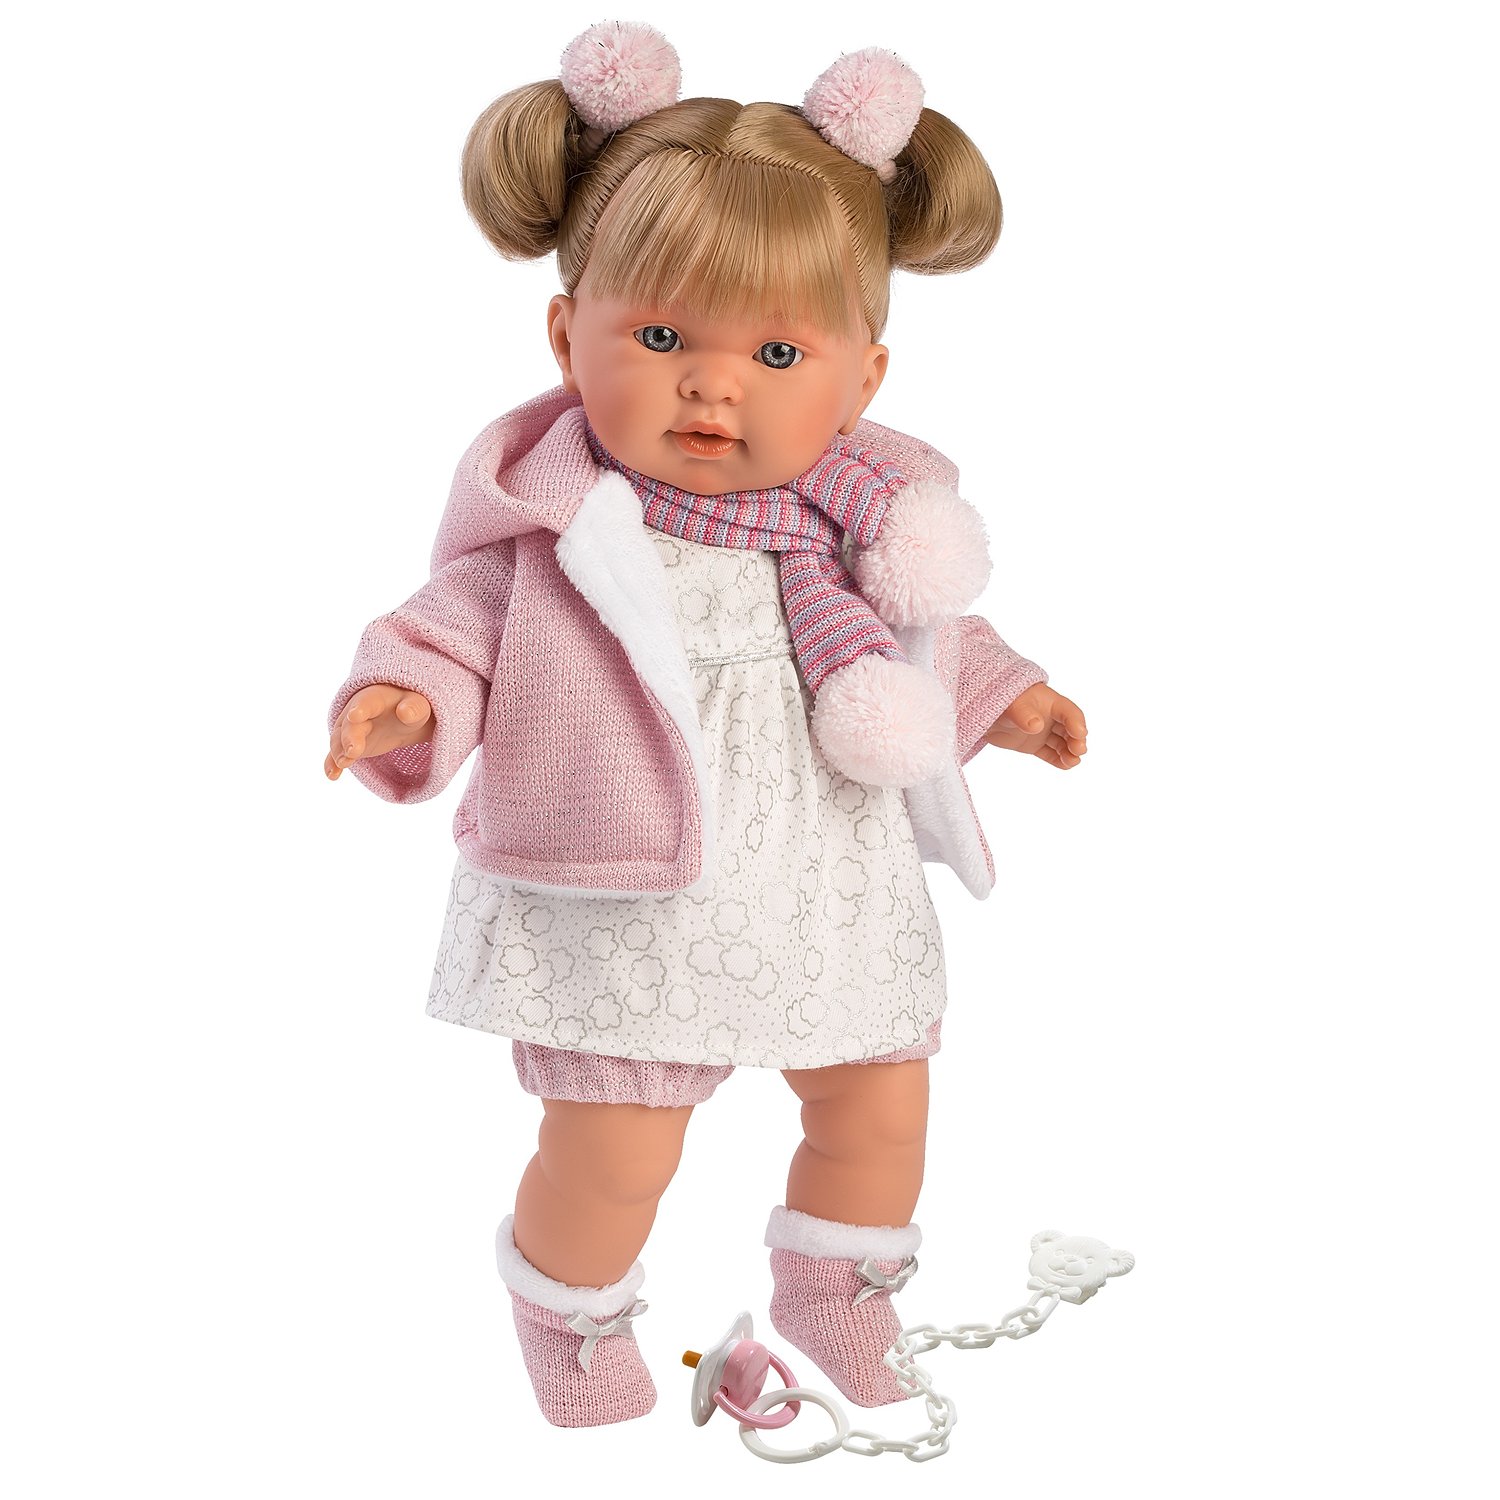 Кукла Лоренс Купить В Интернет Магазине